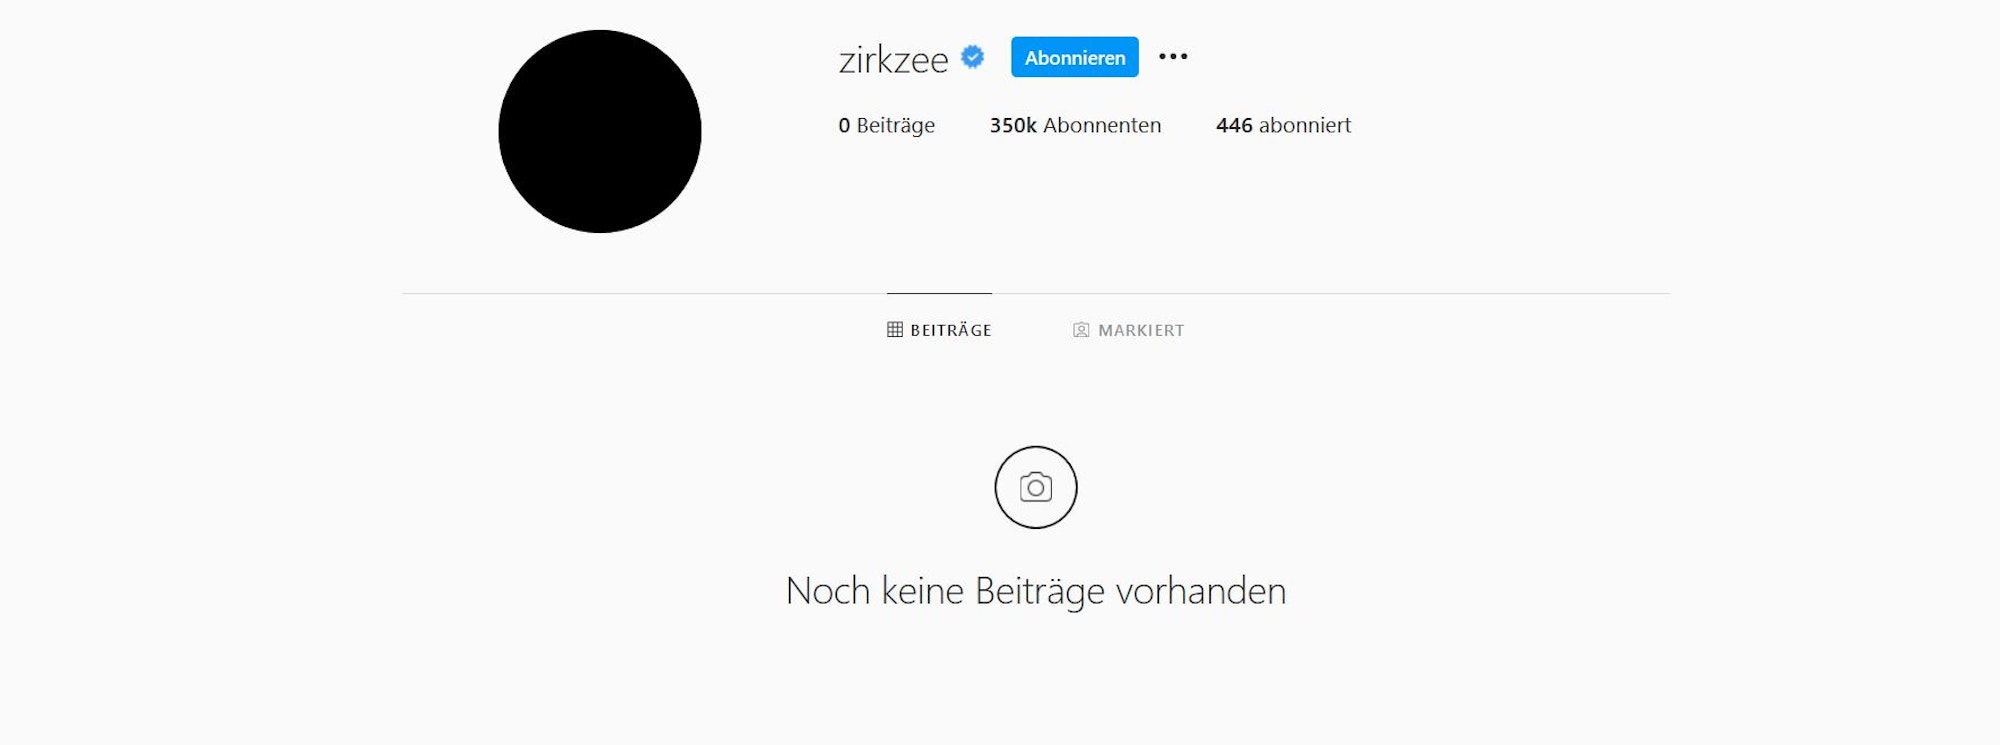 Joshua Zirkzee löscht alle Fotos auf seinem Instagram-Profil.